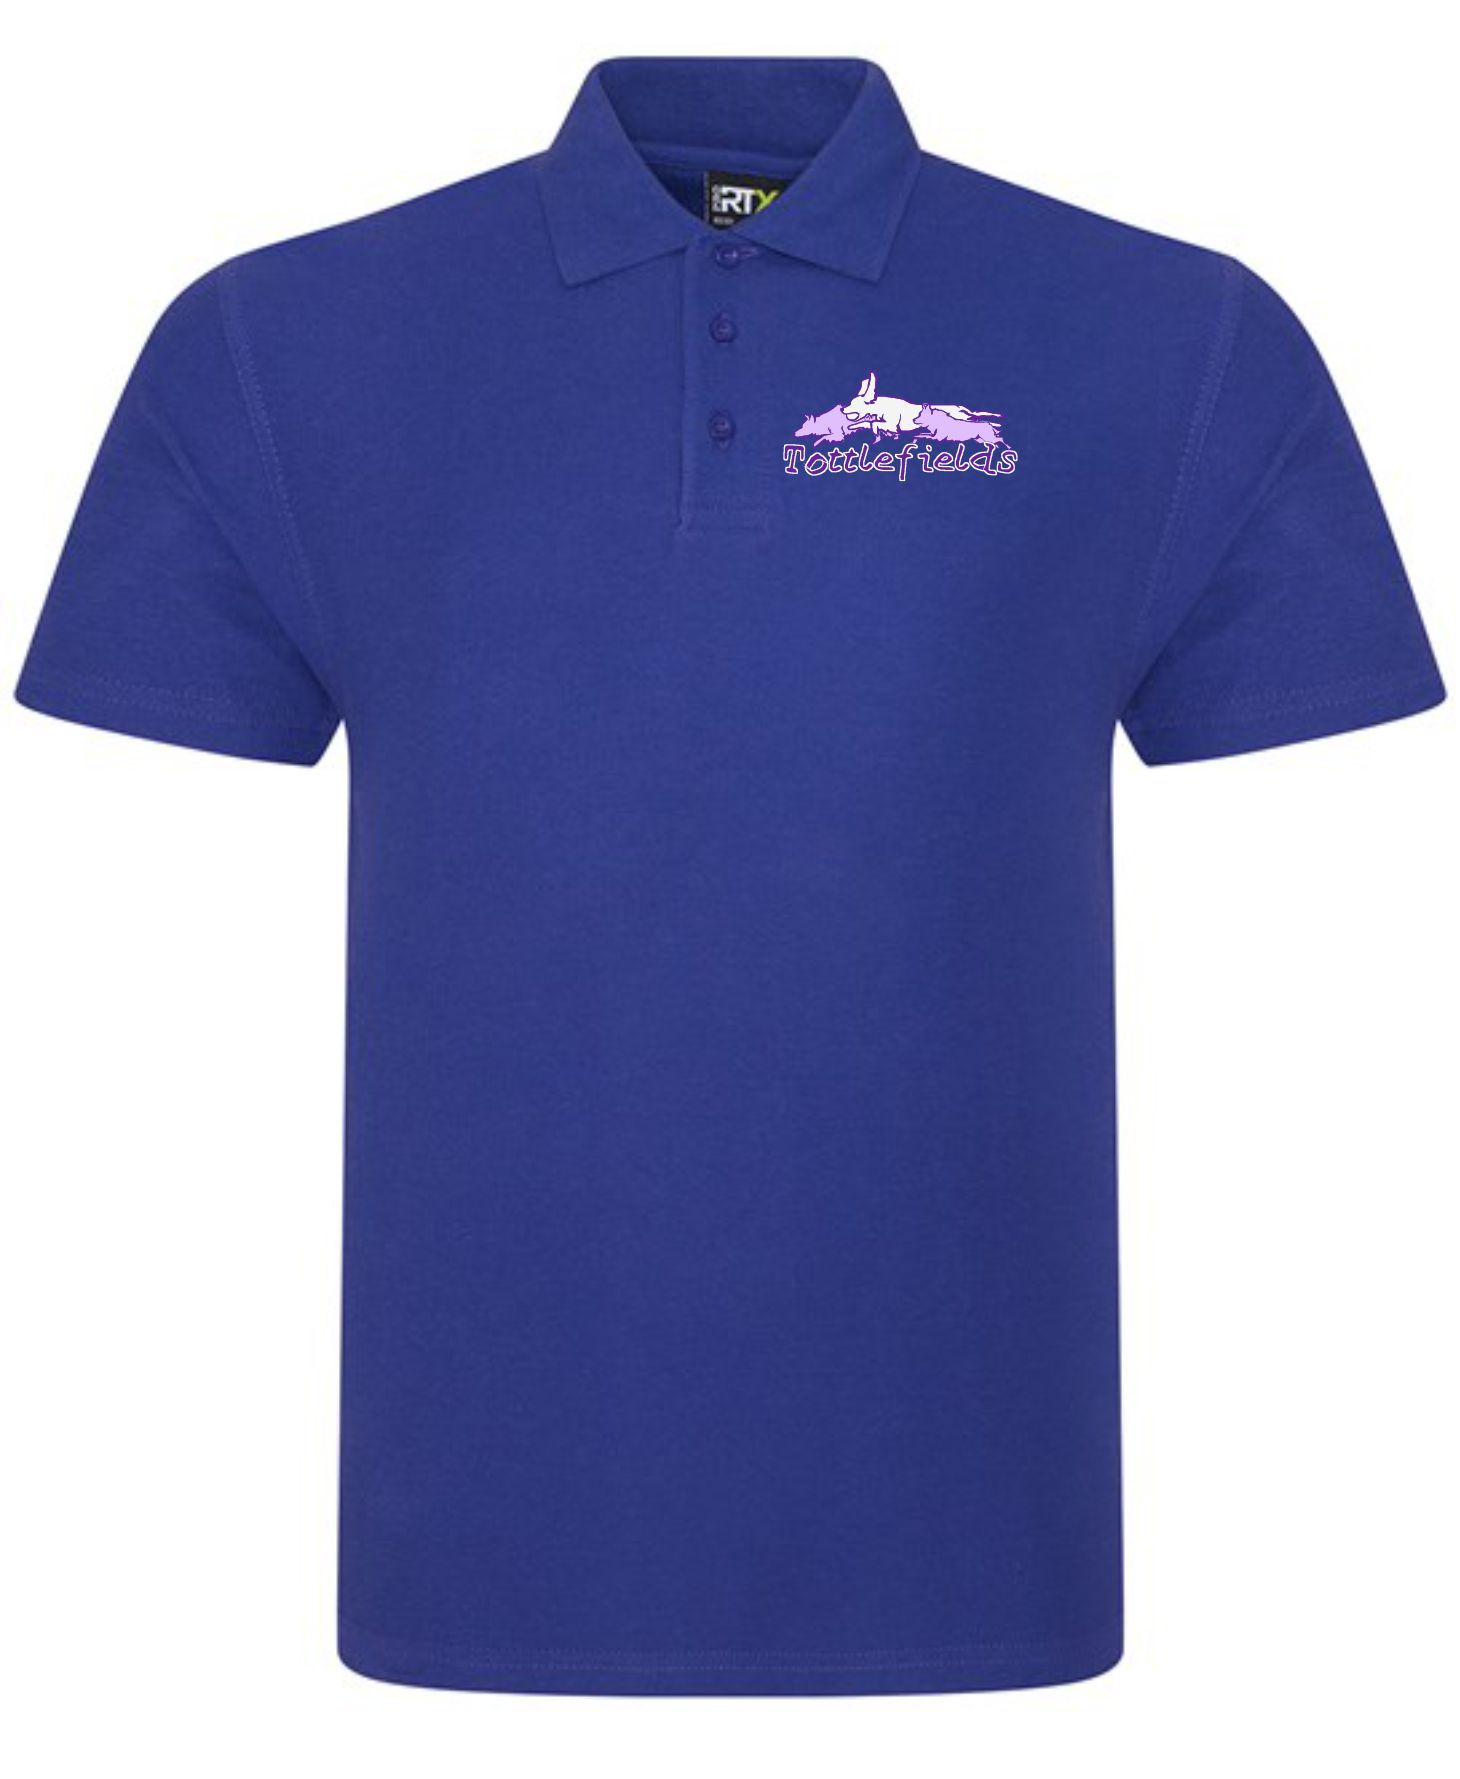 Tottlefields - Purple Polo Shirt (Unisex)